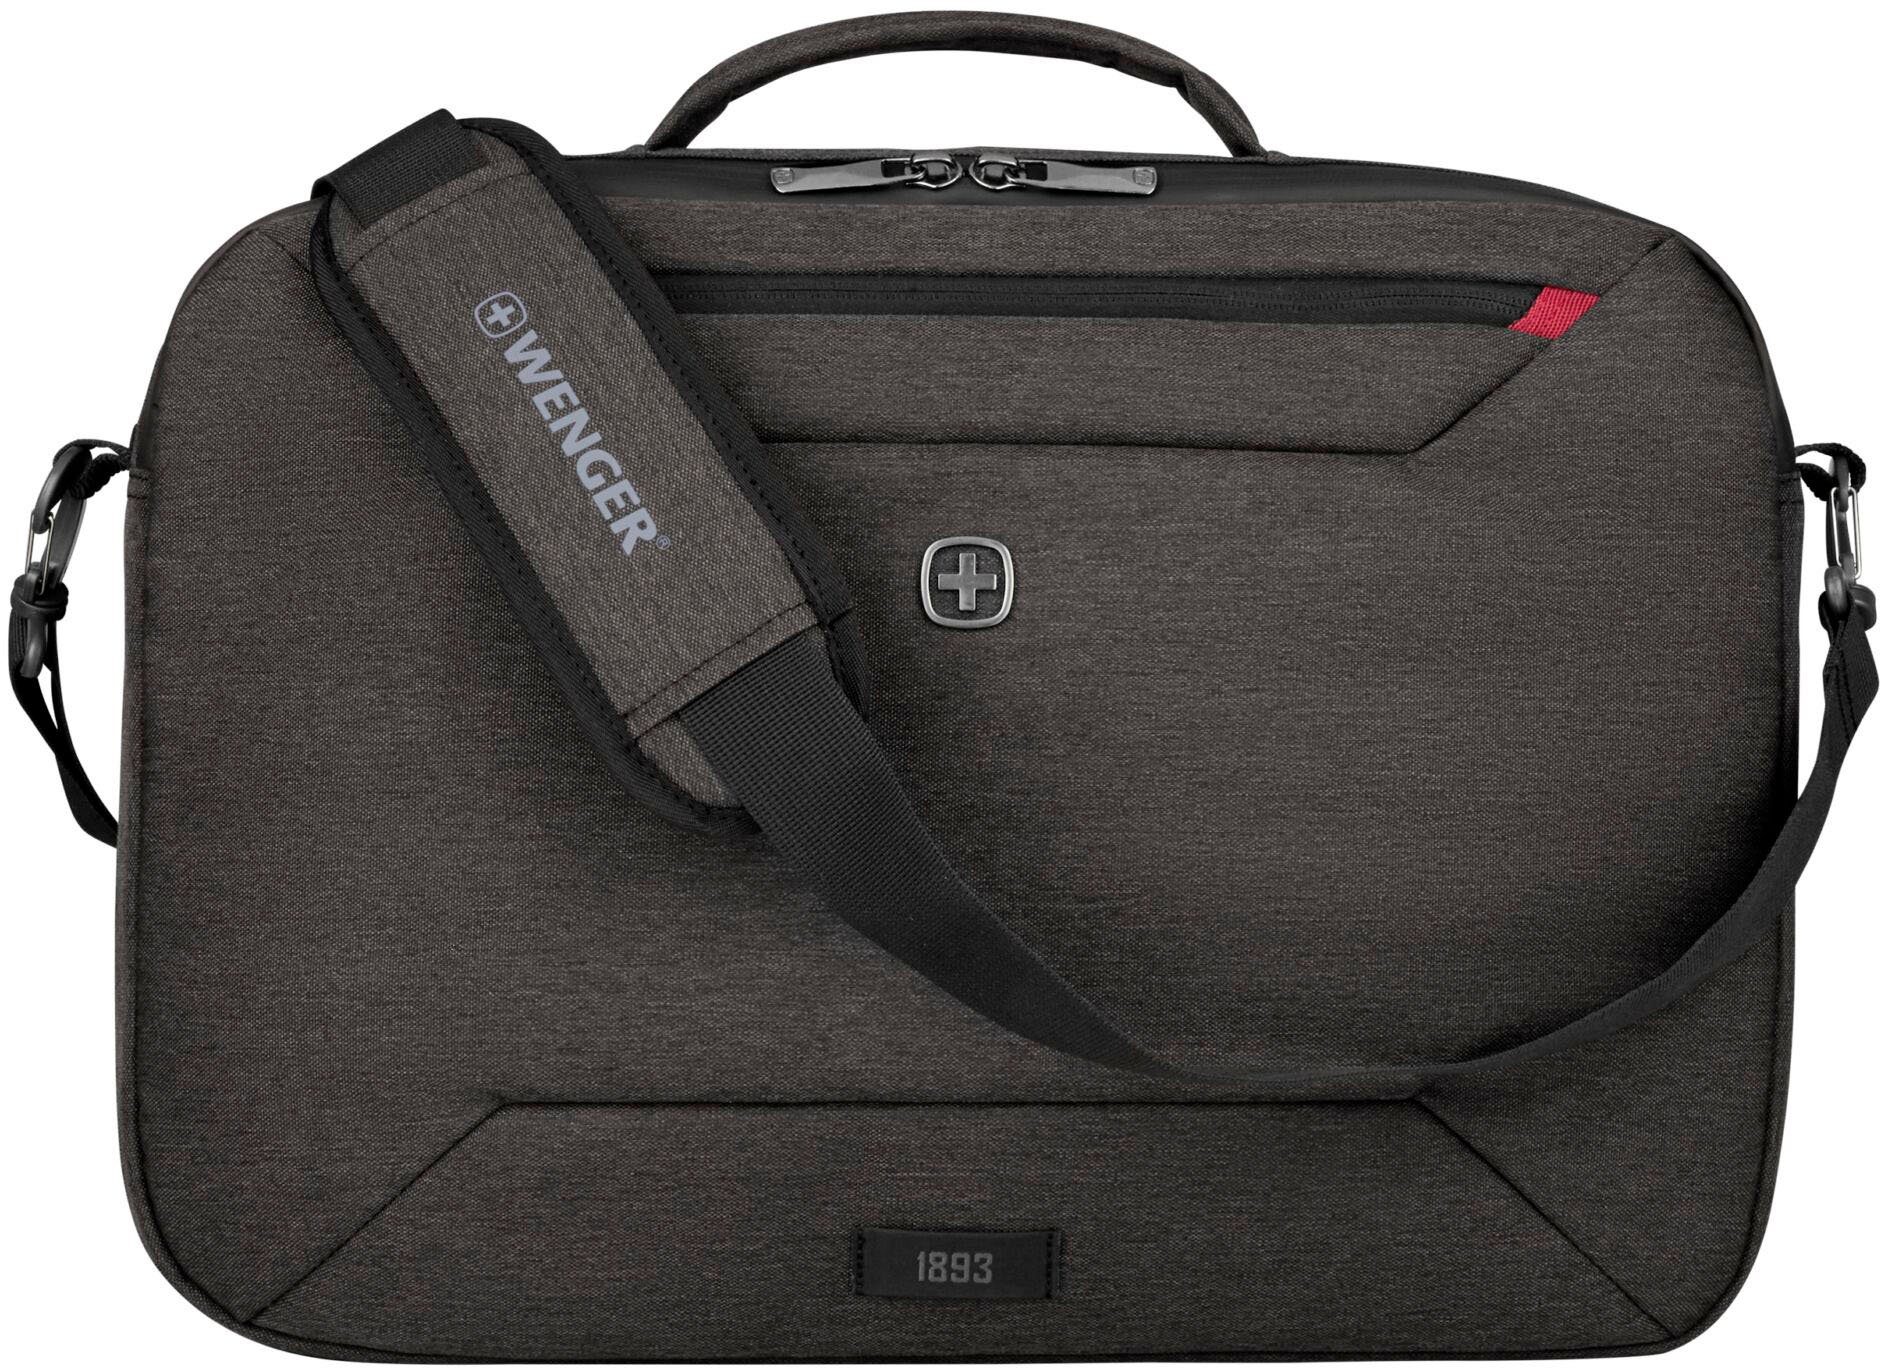 Wenger Laptoptasche Commute, auch grau, Rucksack mit als 16-Zoll tragbar Laptopfach